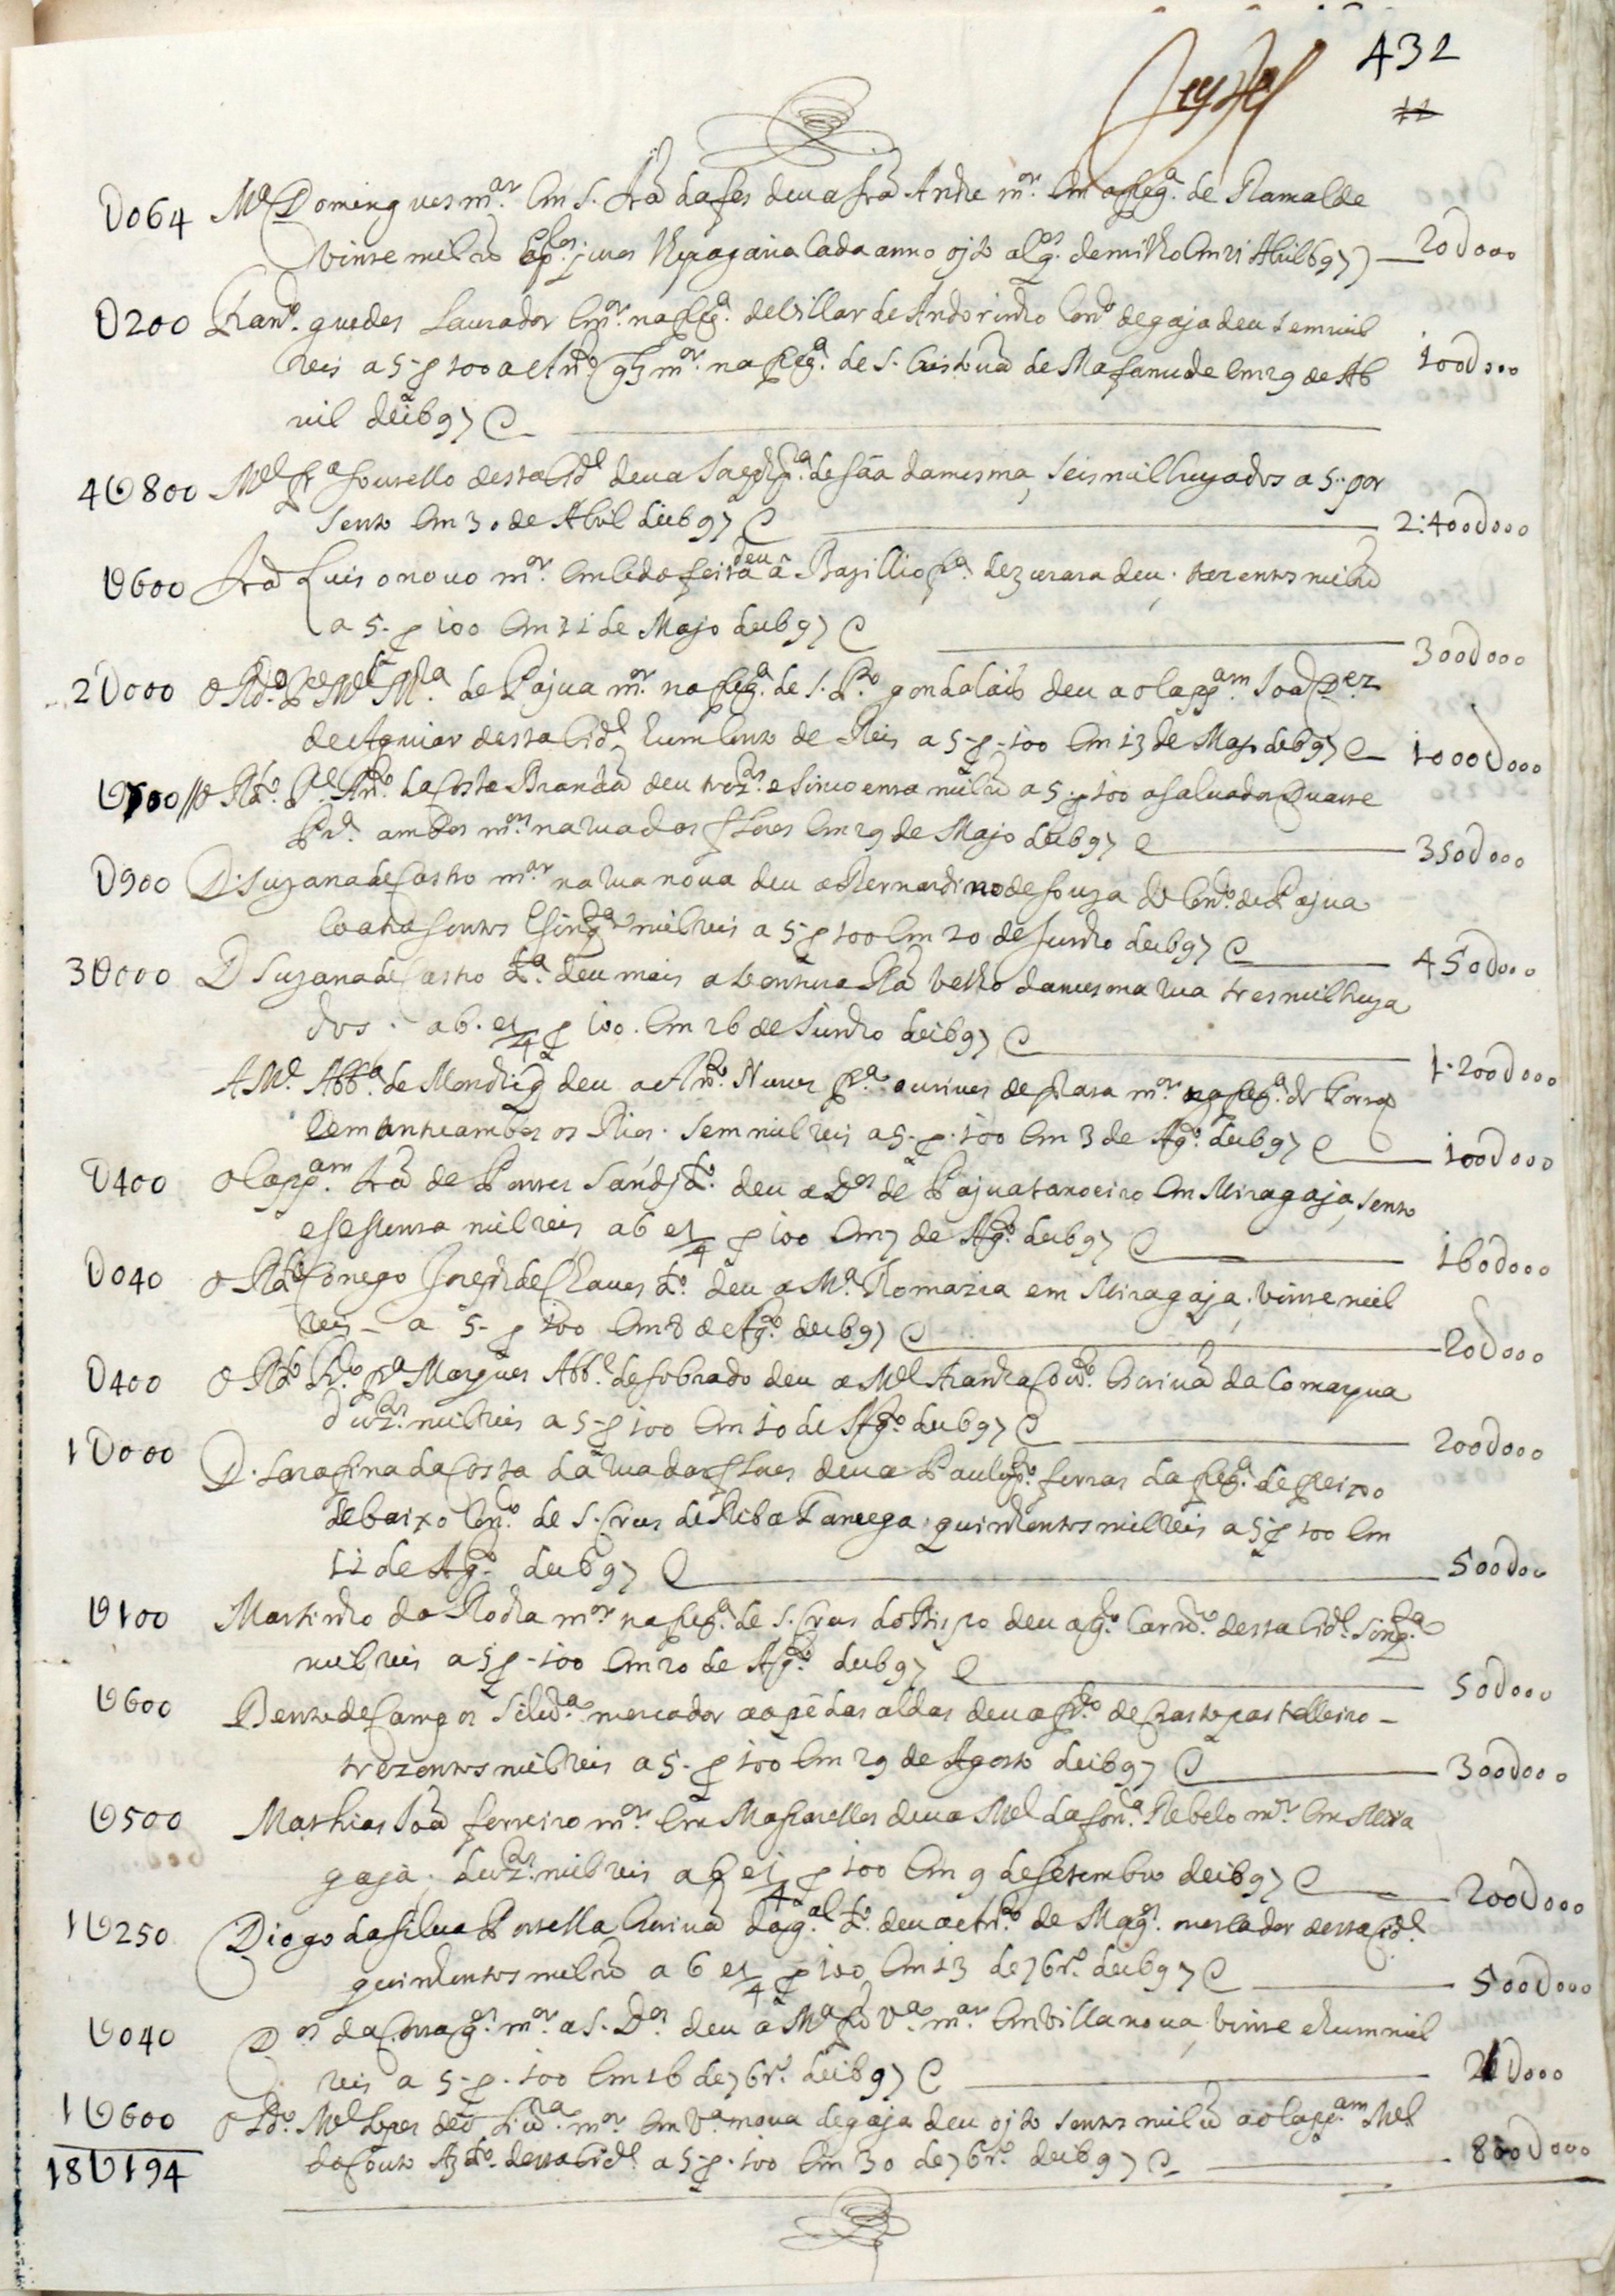 Notas do tabelião António Gonçalves Mendes de 1686 a 1698